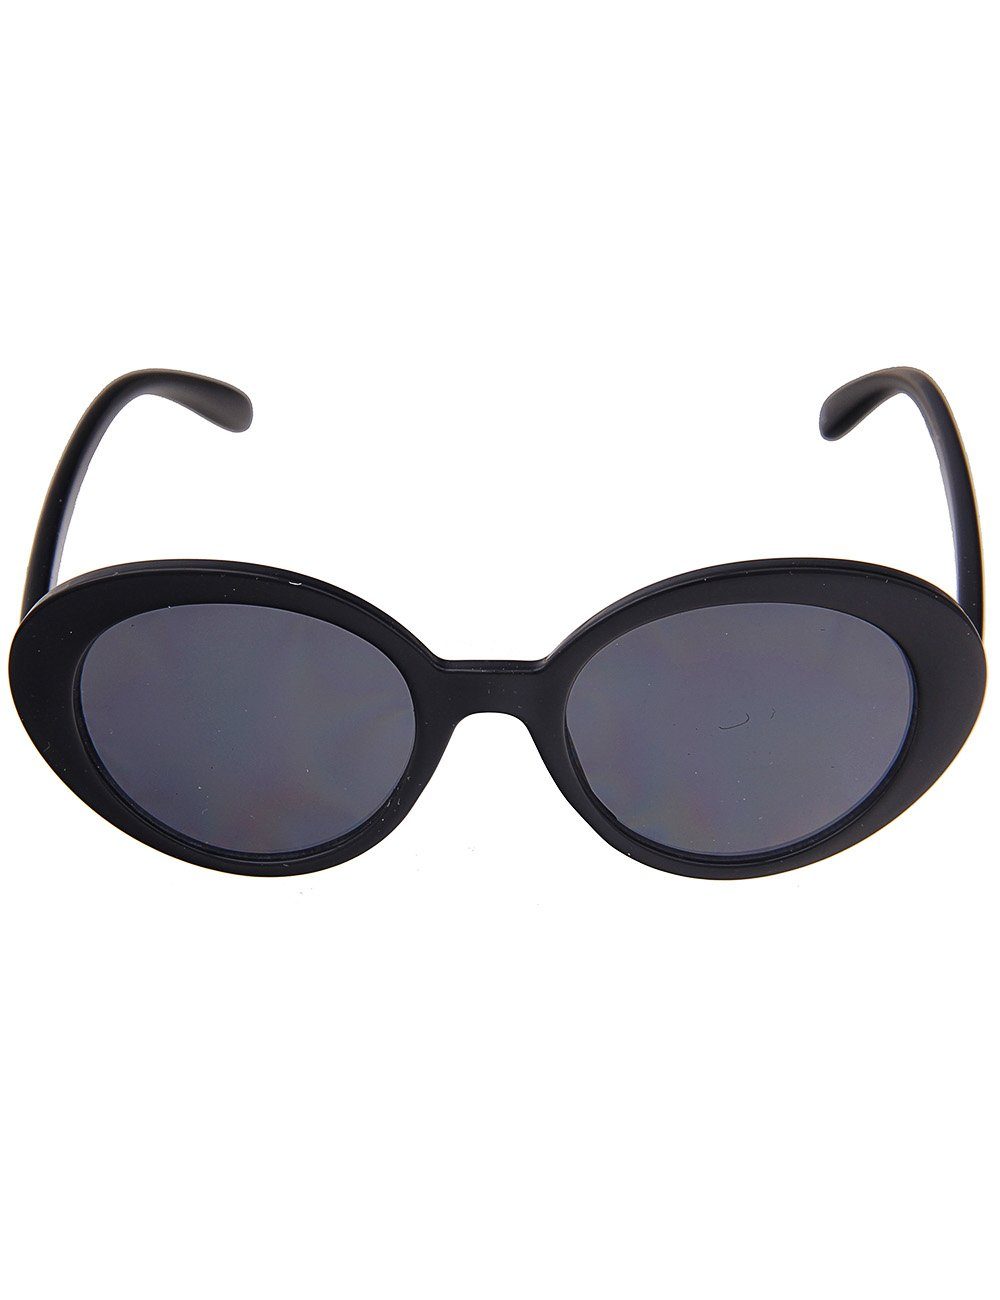 leslii Sonnenbrille Retro mit ovalen Gläsern